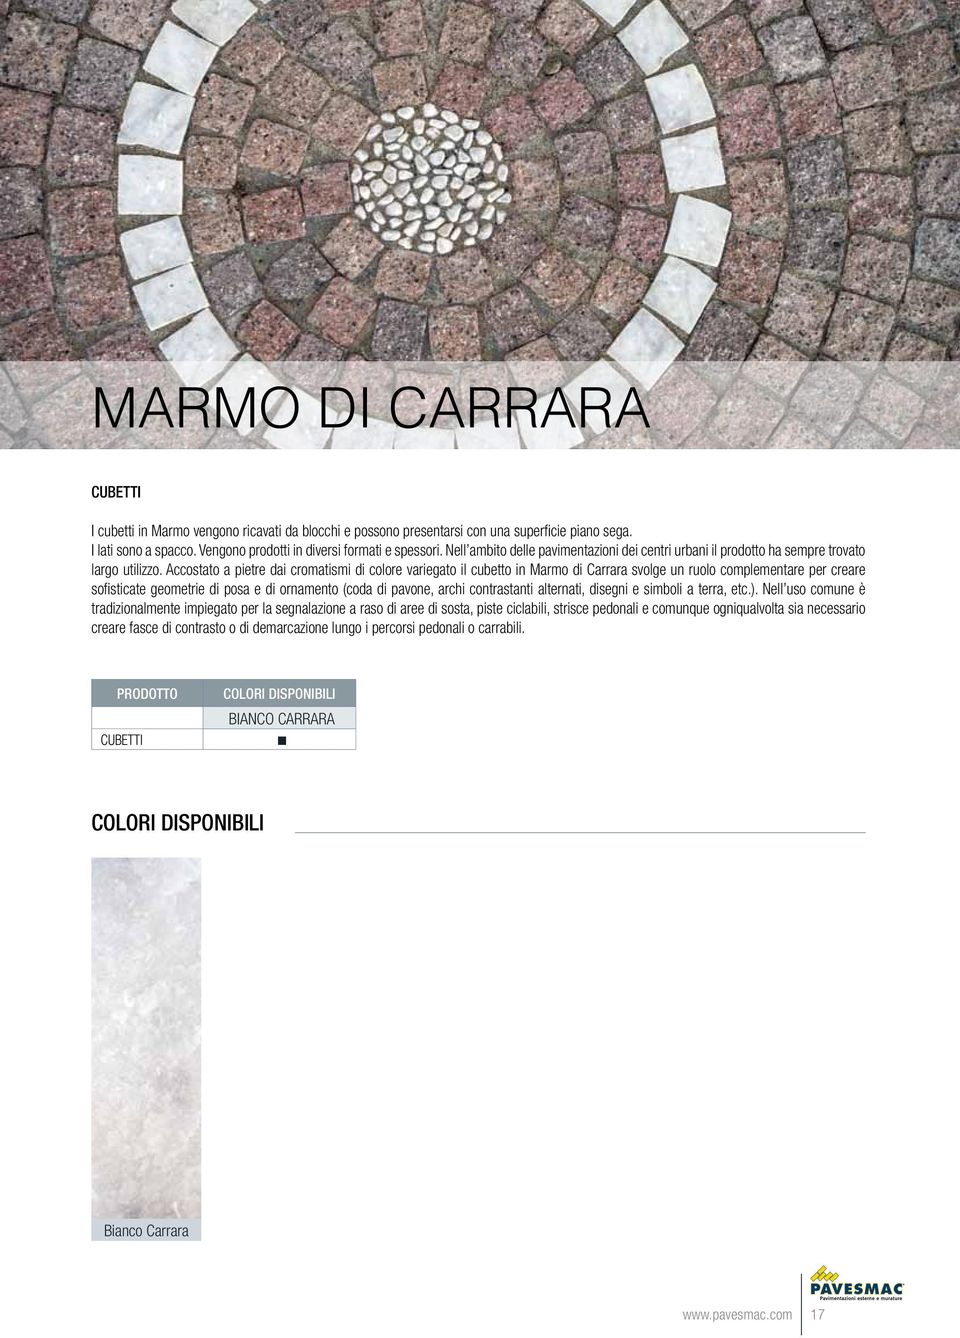 Accostato a pietre dai cromatismi di colore variegato il cubetto in Marmo di Carrara svolge un ruolo complementare per creare sofisticate geometrie di posa e di ornamento (coda di pavone, archi